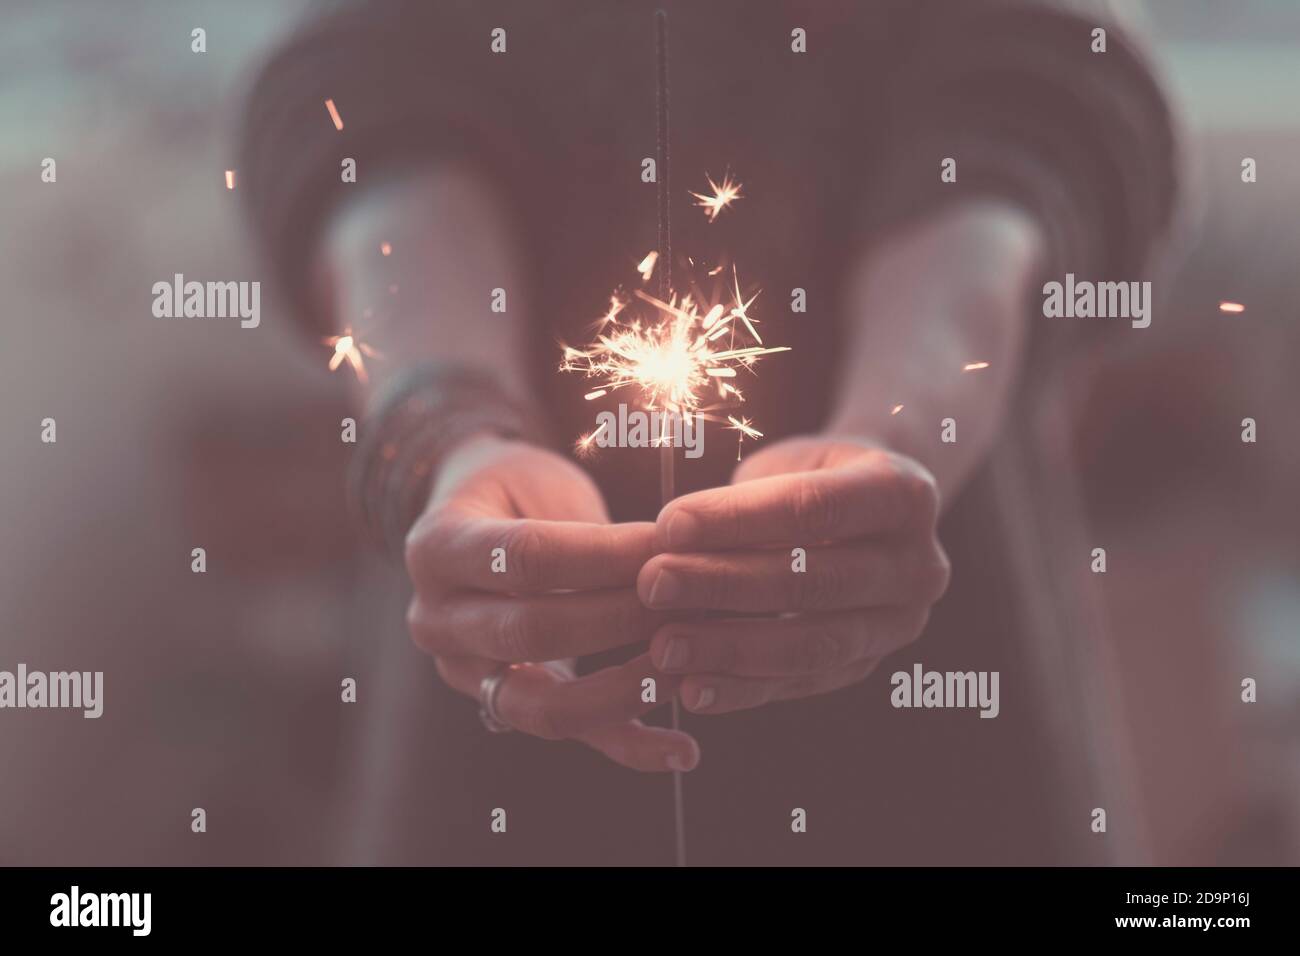 Romantische Liebe Konzept des Lebens mit Nahaufnahme der Hände Mit Feuerfunkern bei Nacht zu feiern - Romantik und Party-Event-Zeit Stockfoto